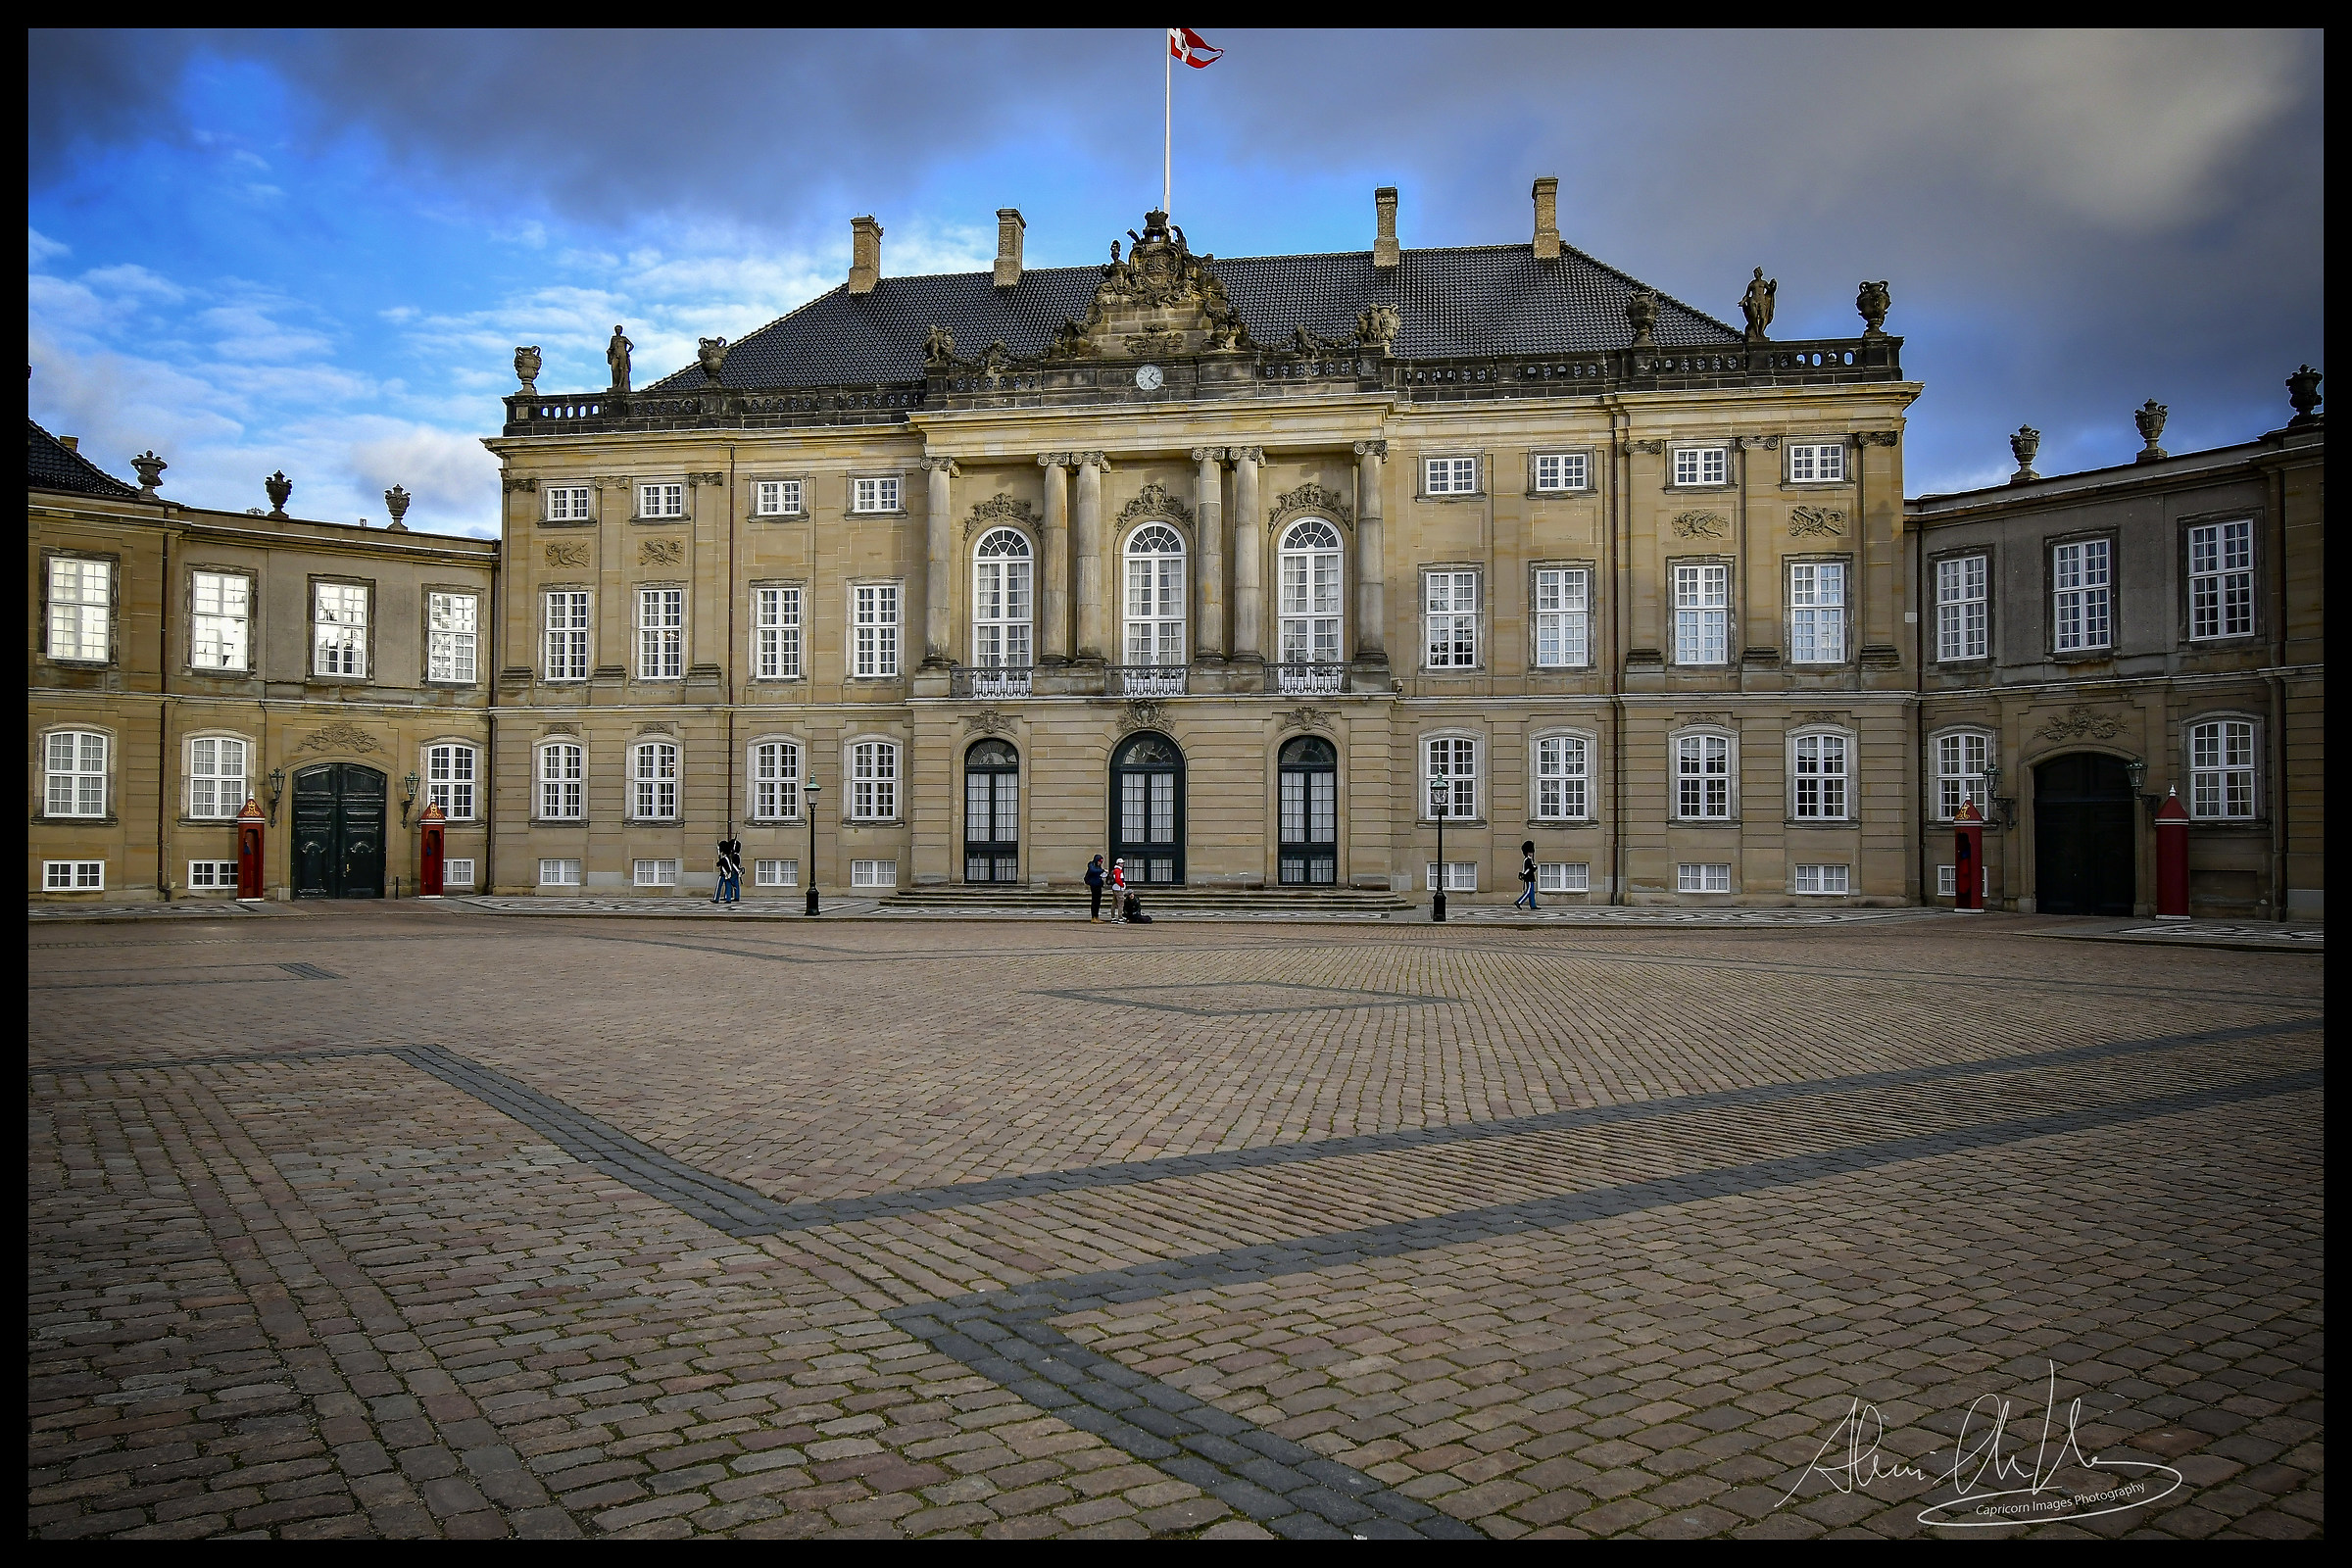 Palazzo reale di Copenaghen, l'Amalienborg - view...